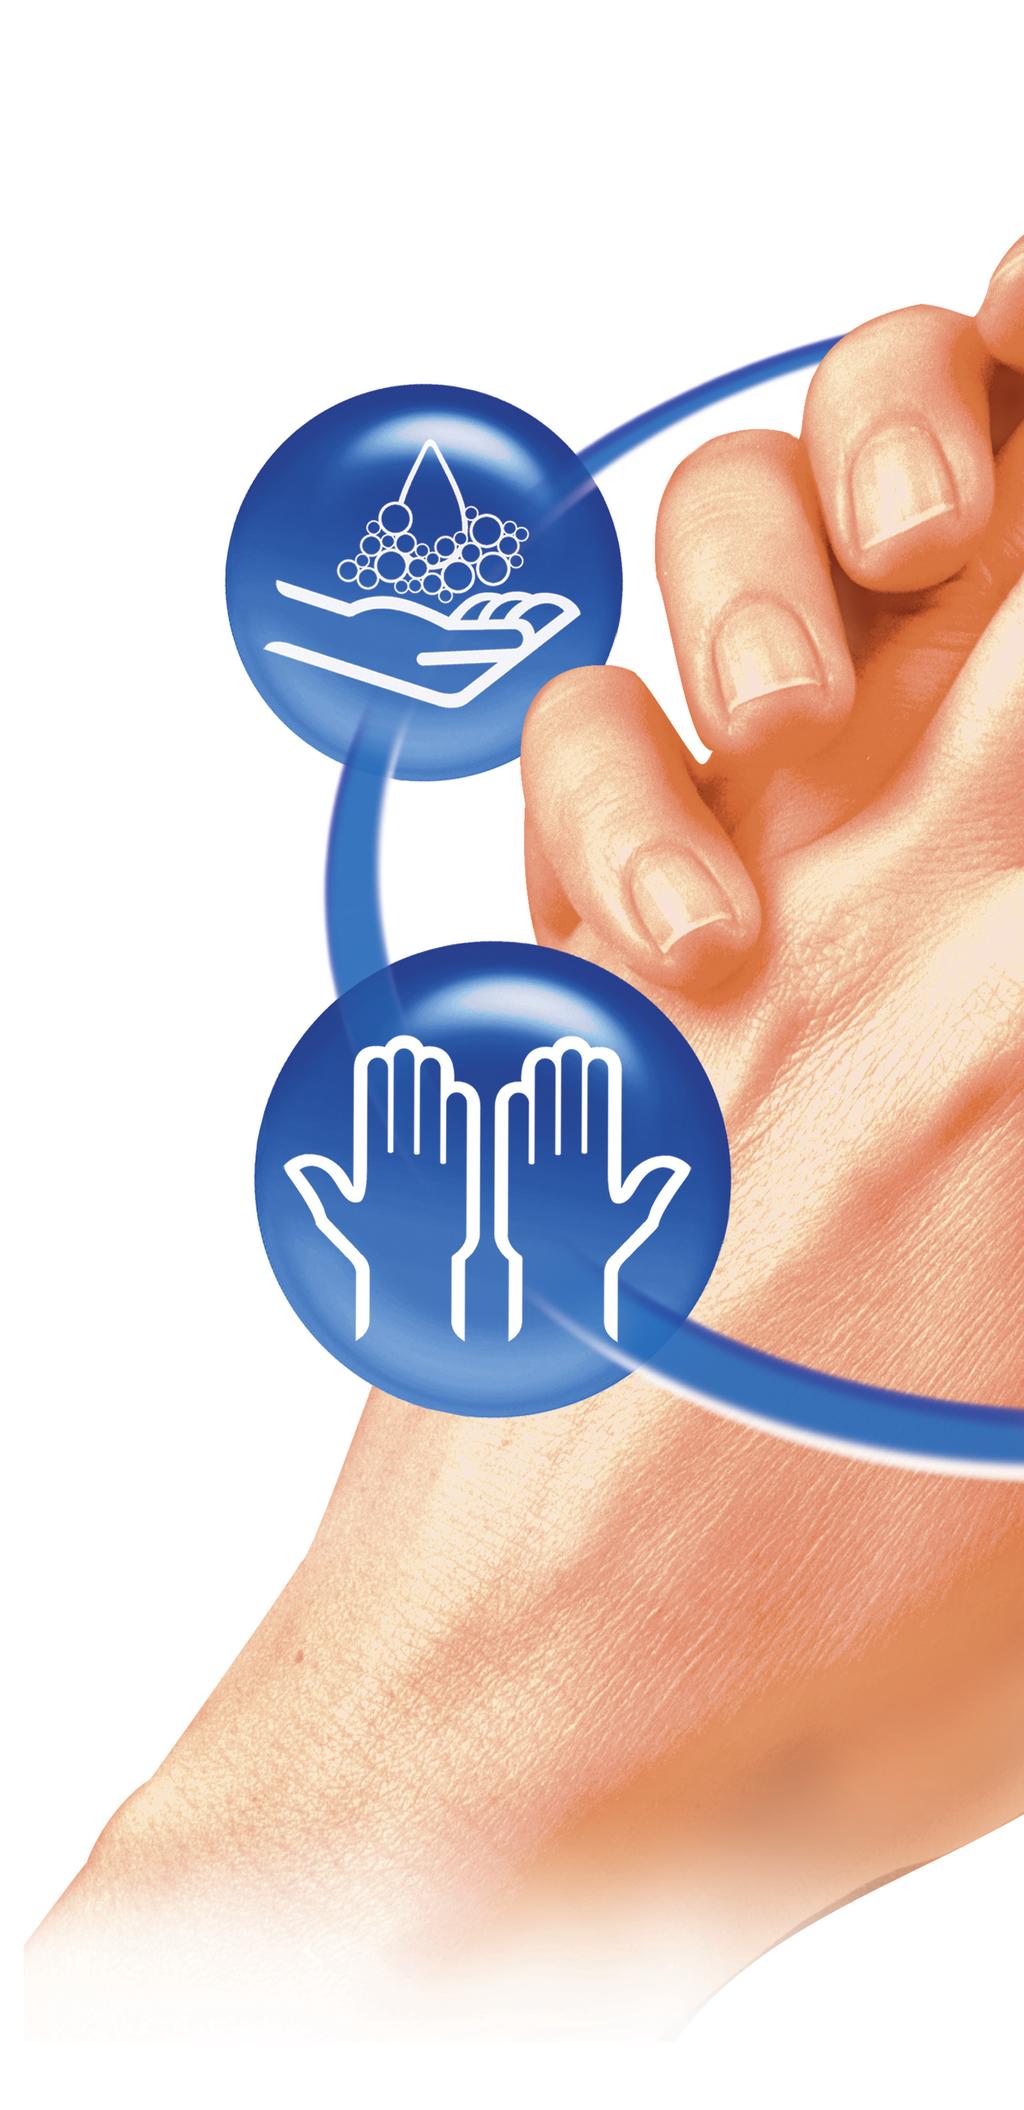 Das HARTMANN Hände Hygiene System Die Komplettlösung für eine optimale Händehygiene.